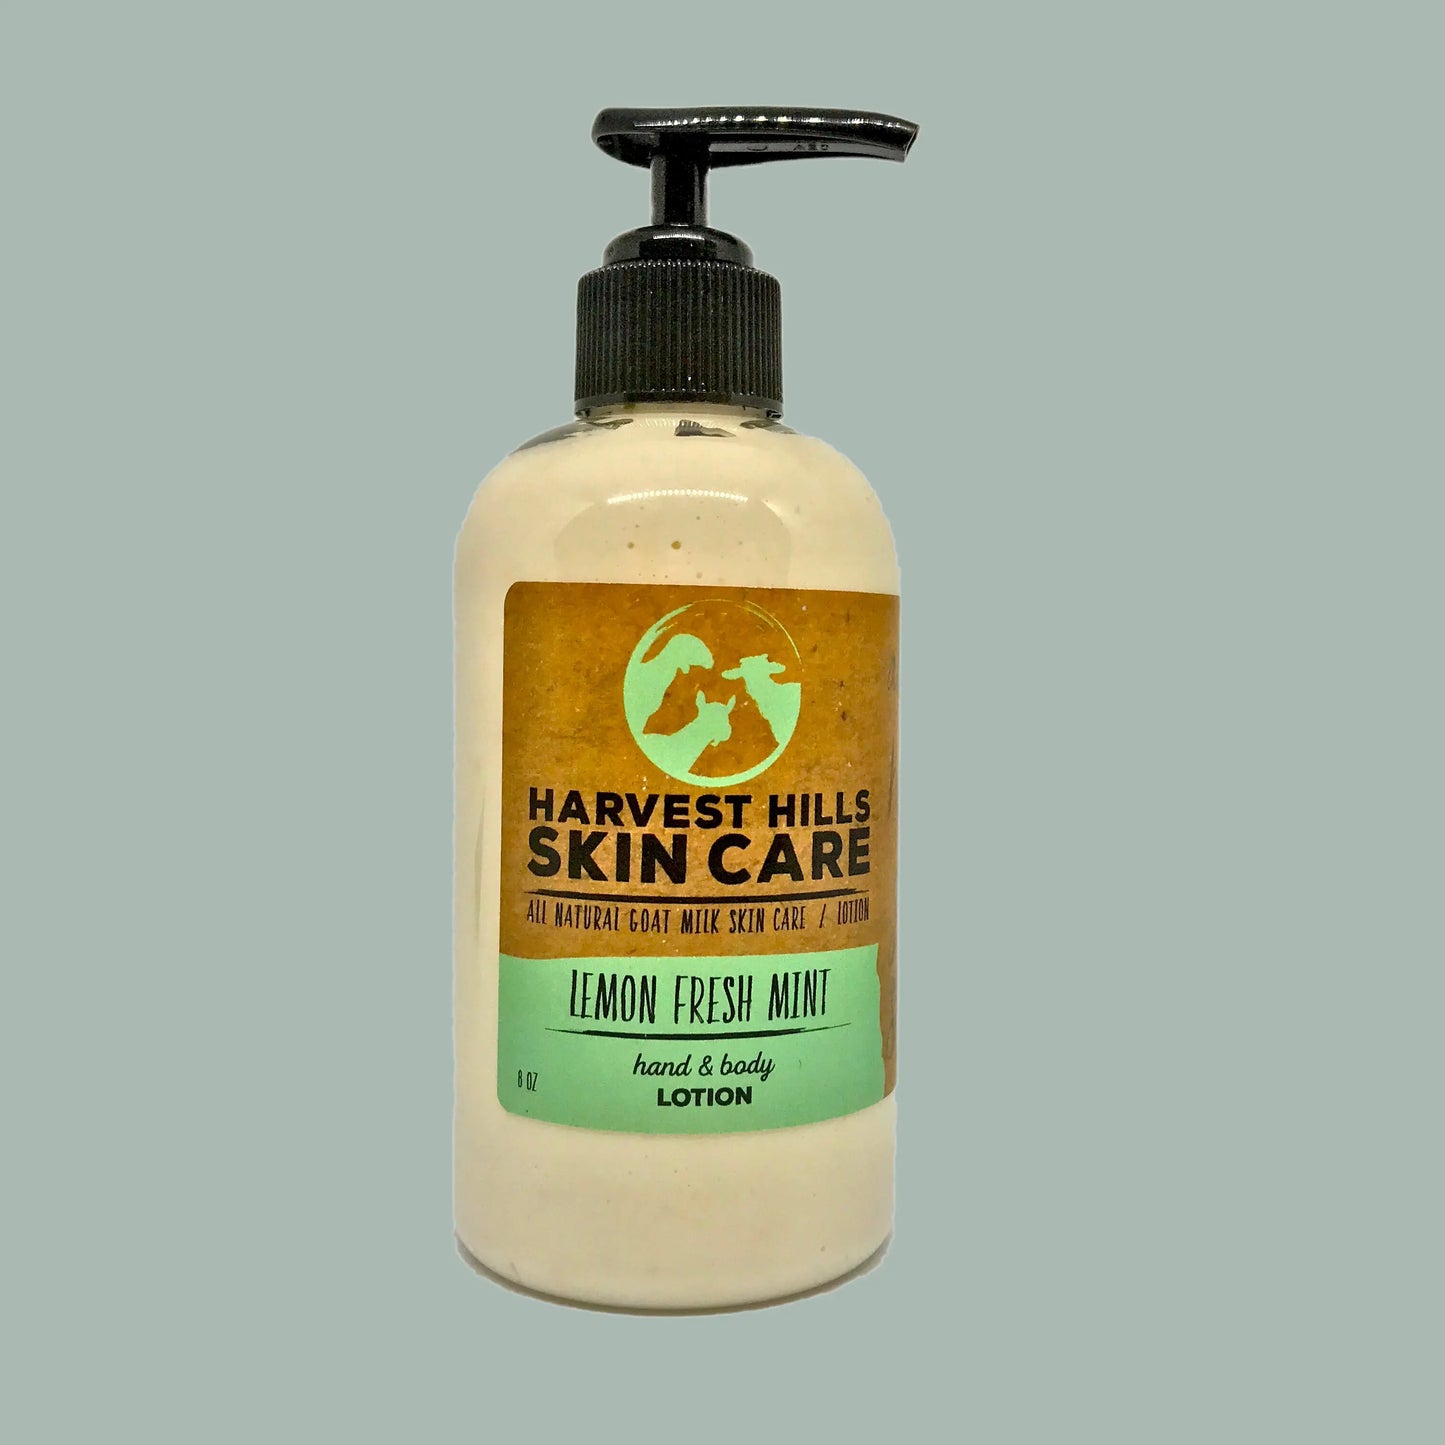 Lemon Fresh Mint Hand & Body Lotion Harvest Hills Skin Care All Natural Goat Milk Skin Care